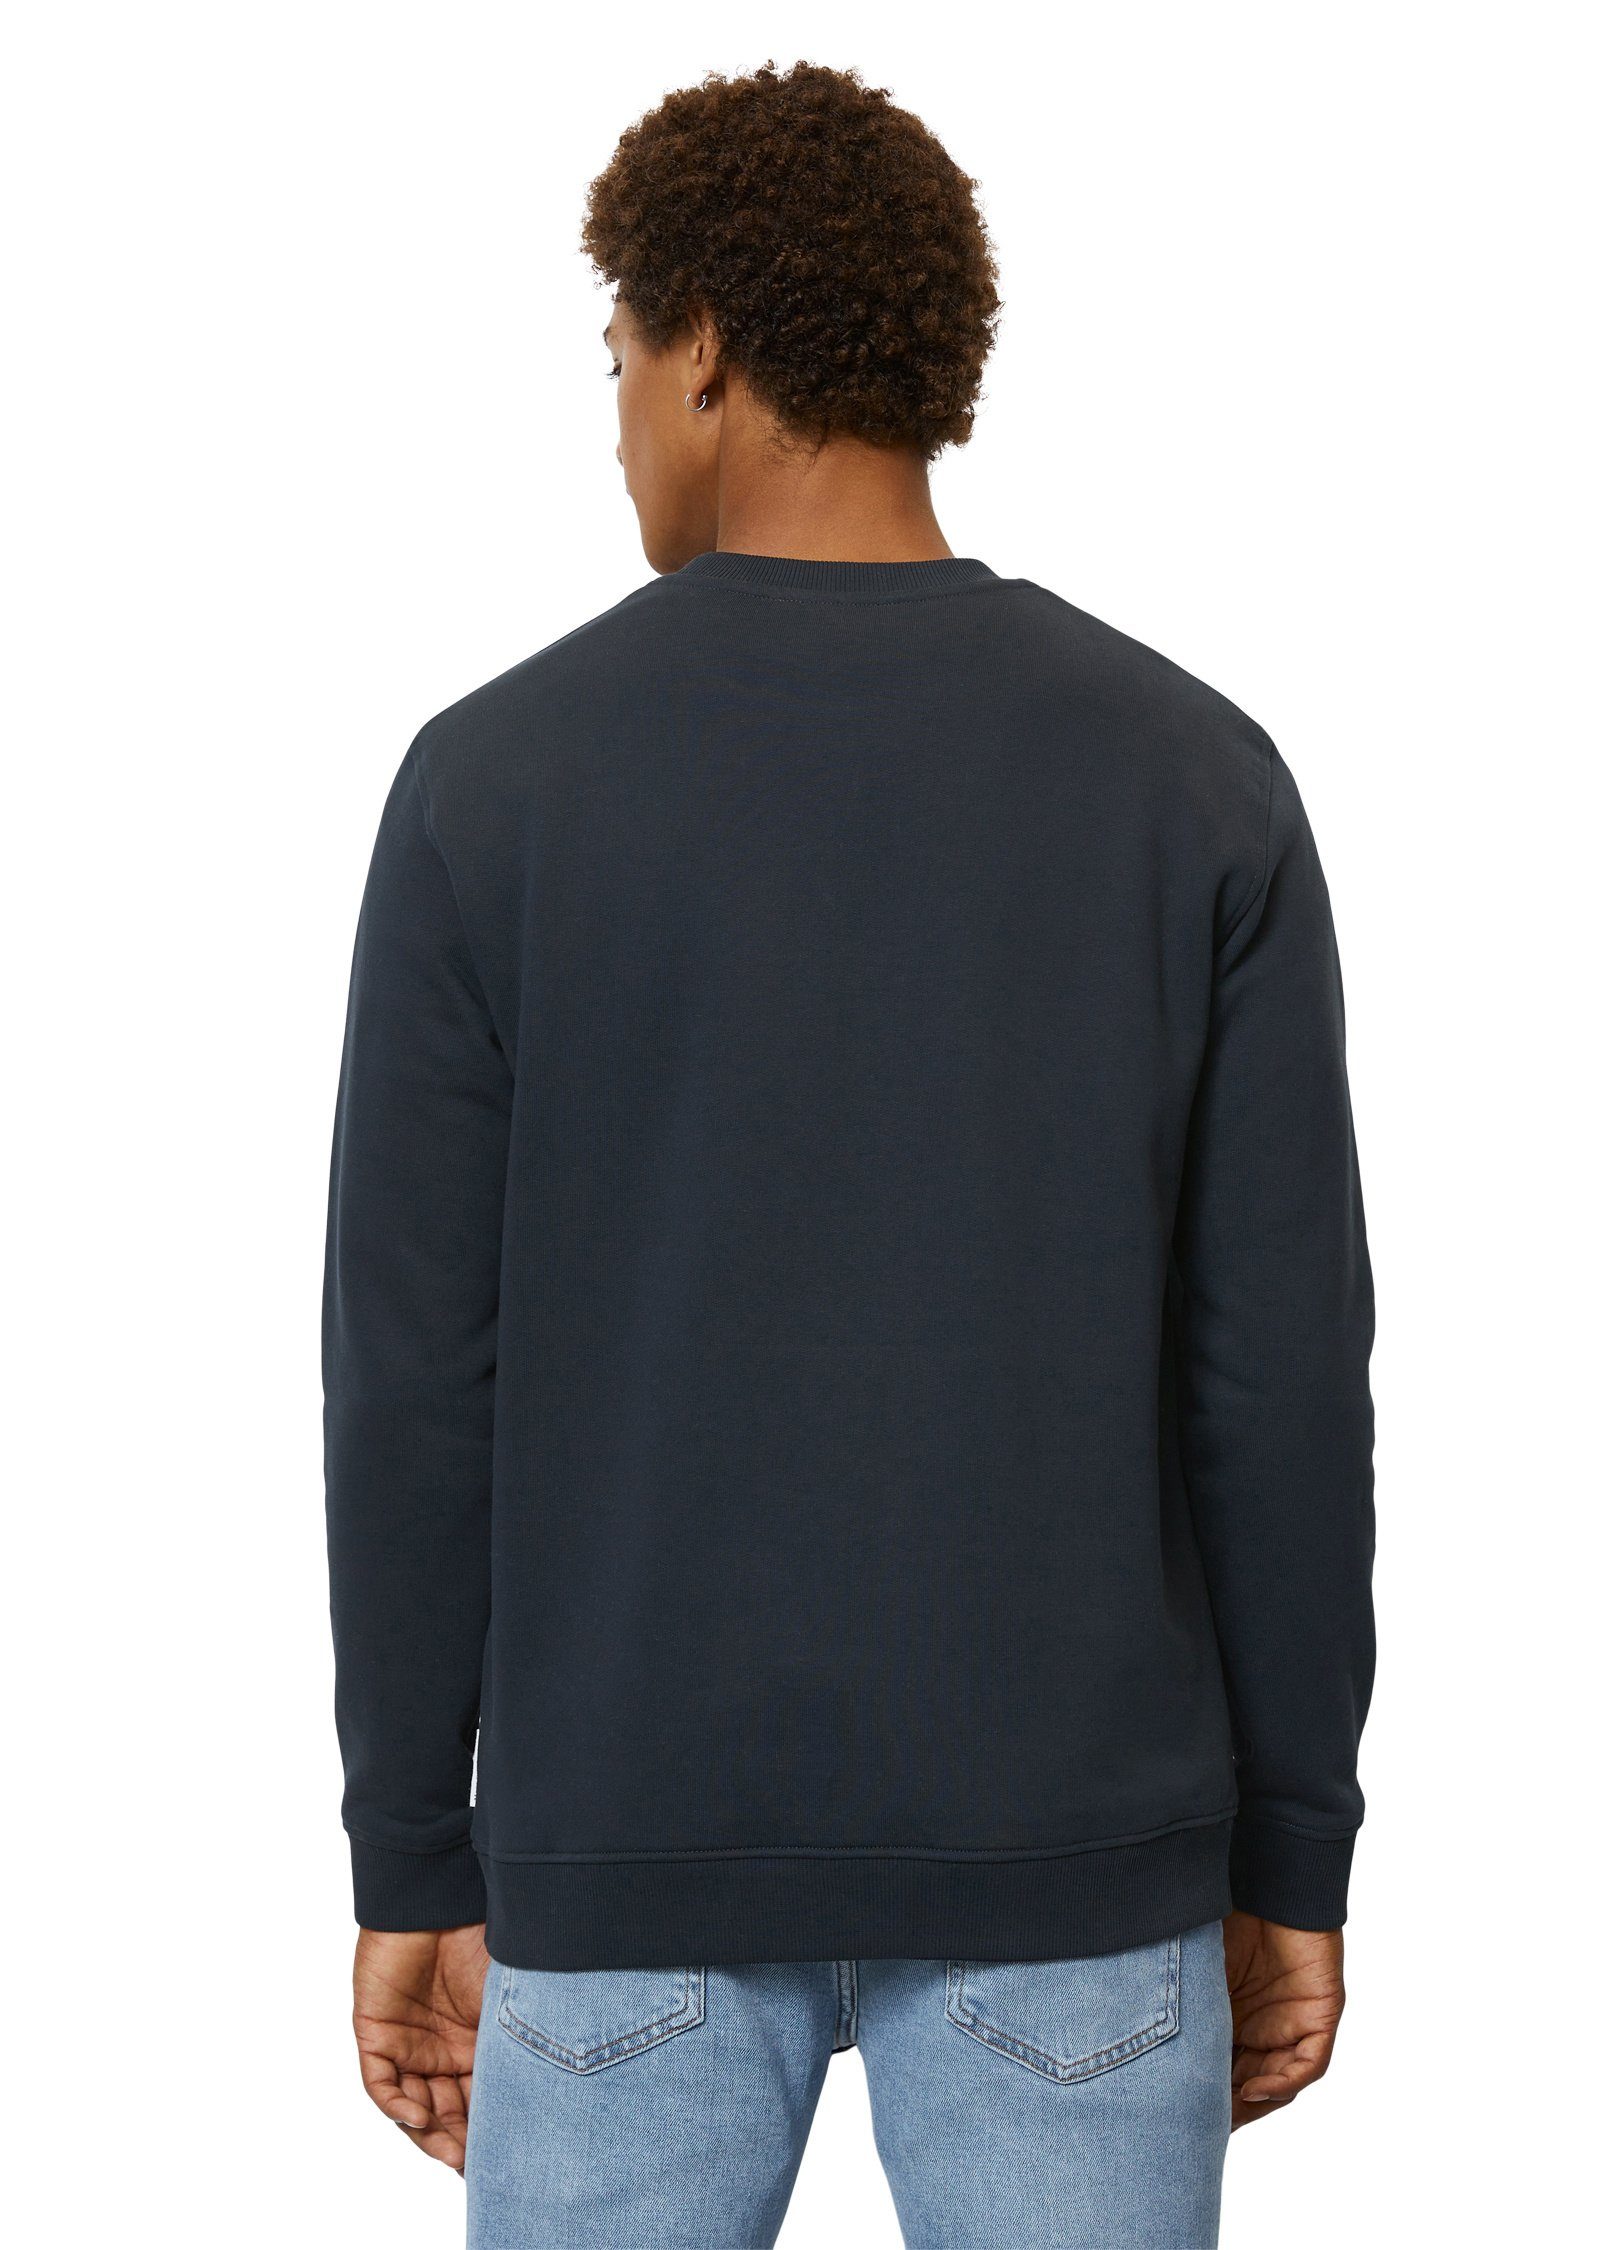 DENIM O'Polo blau Brust-Logo mit Sweatshirt Marc